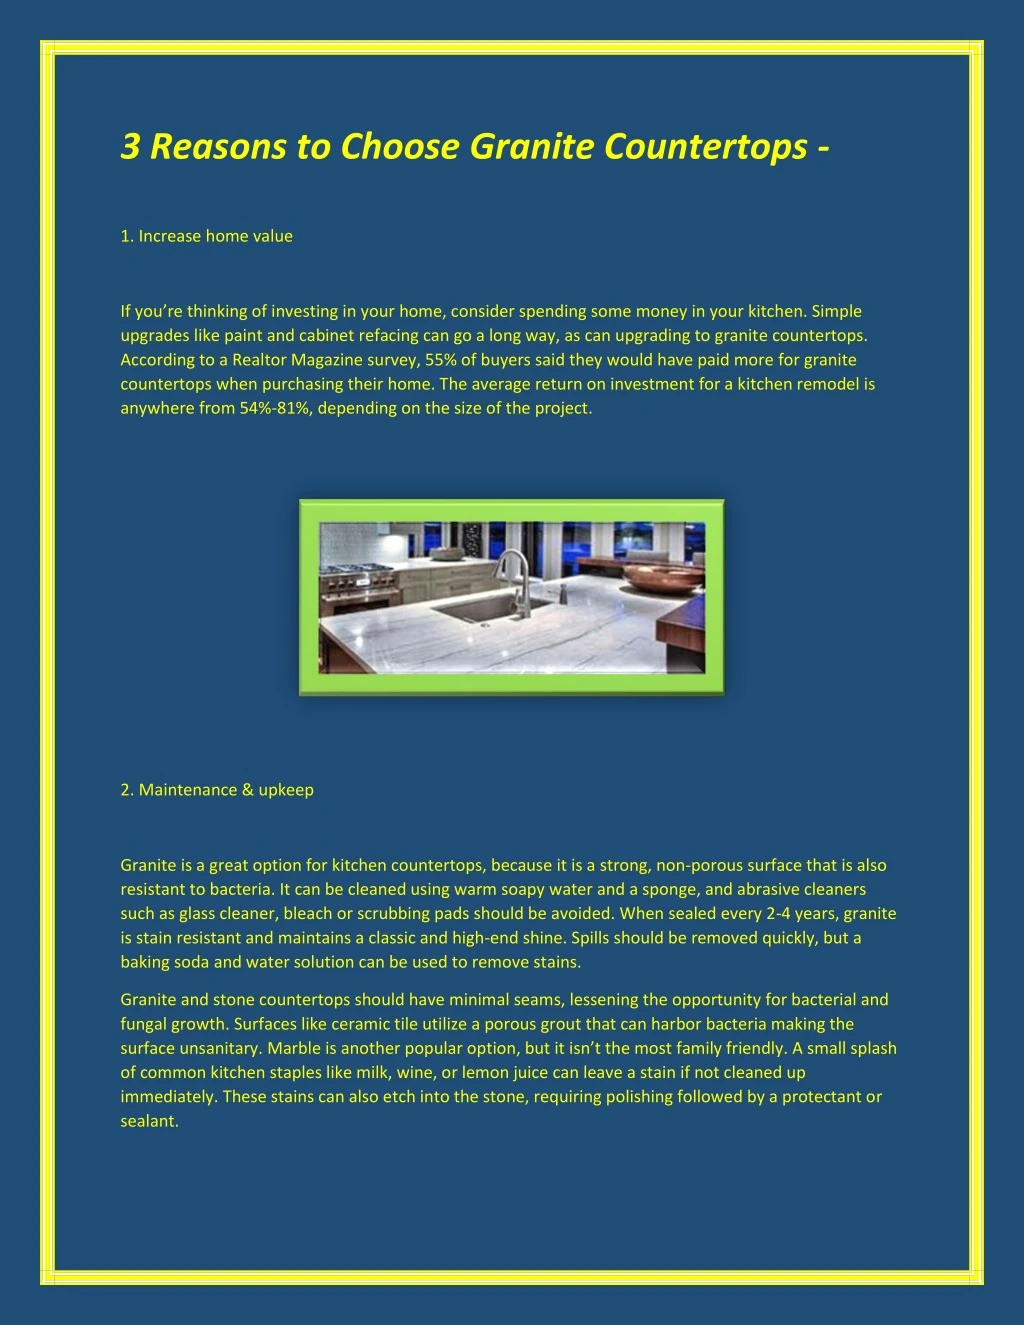 3 reasons to choose granite countertops